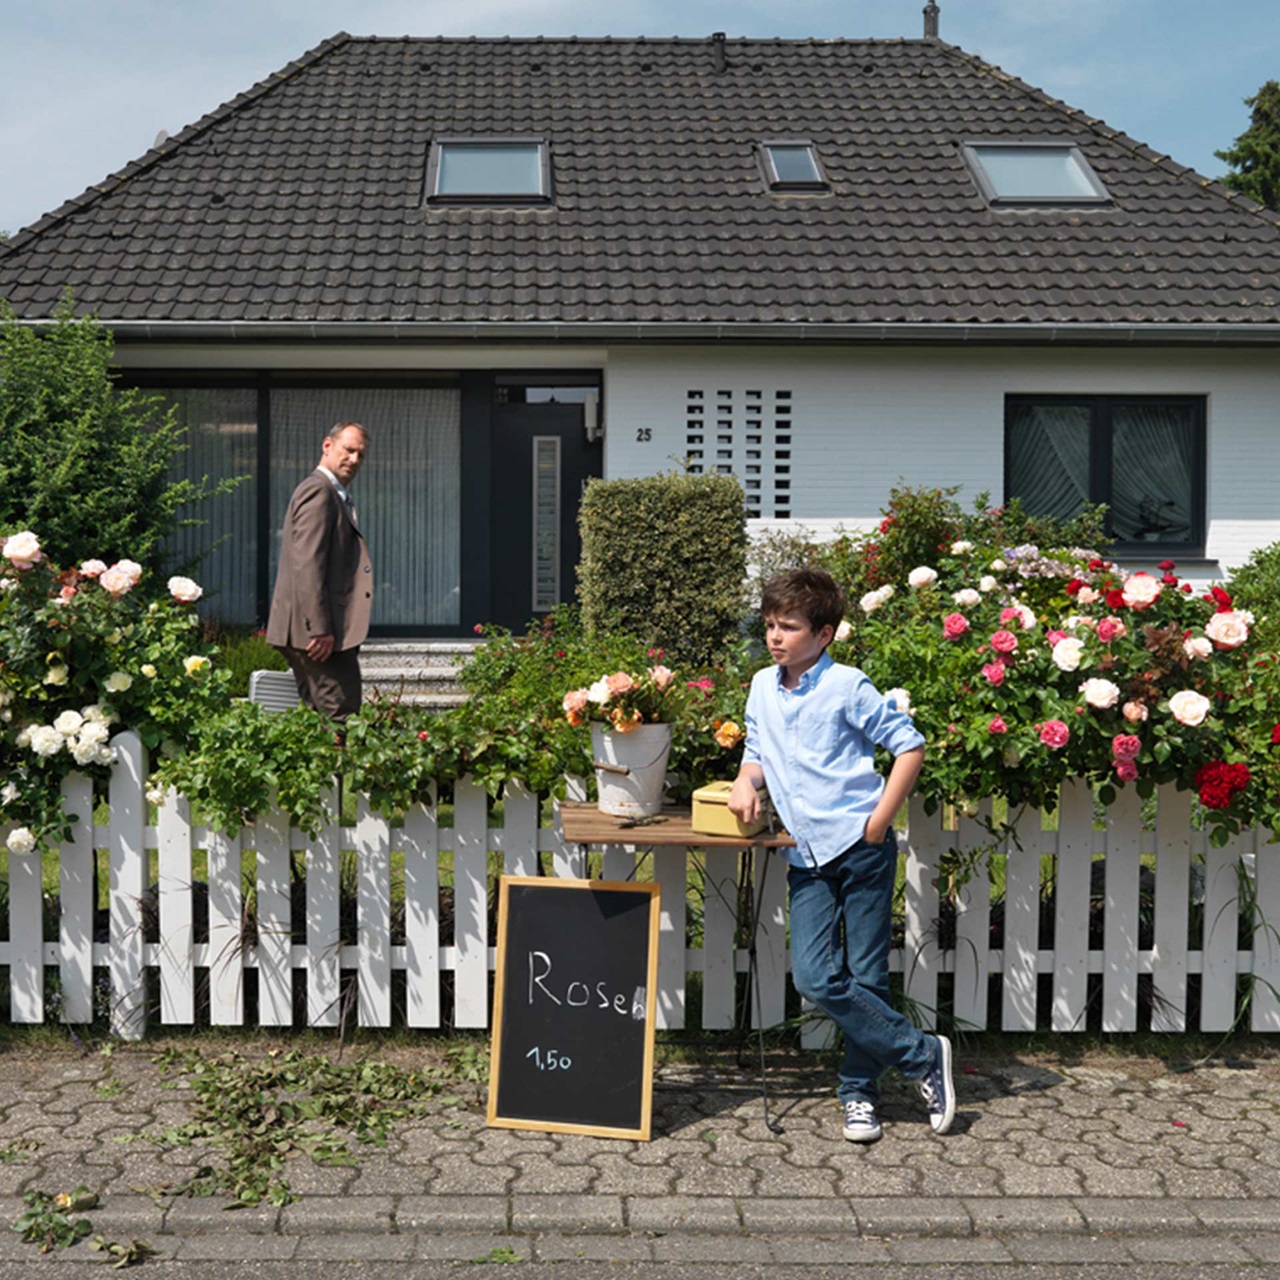 Bub bietet Rosen zum Verkauf vor dem Haus während sein Vater zuschaut